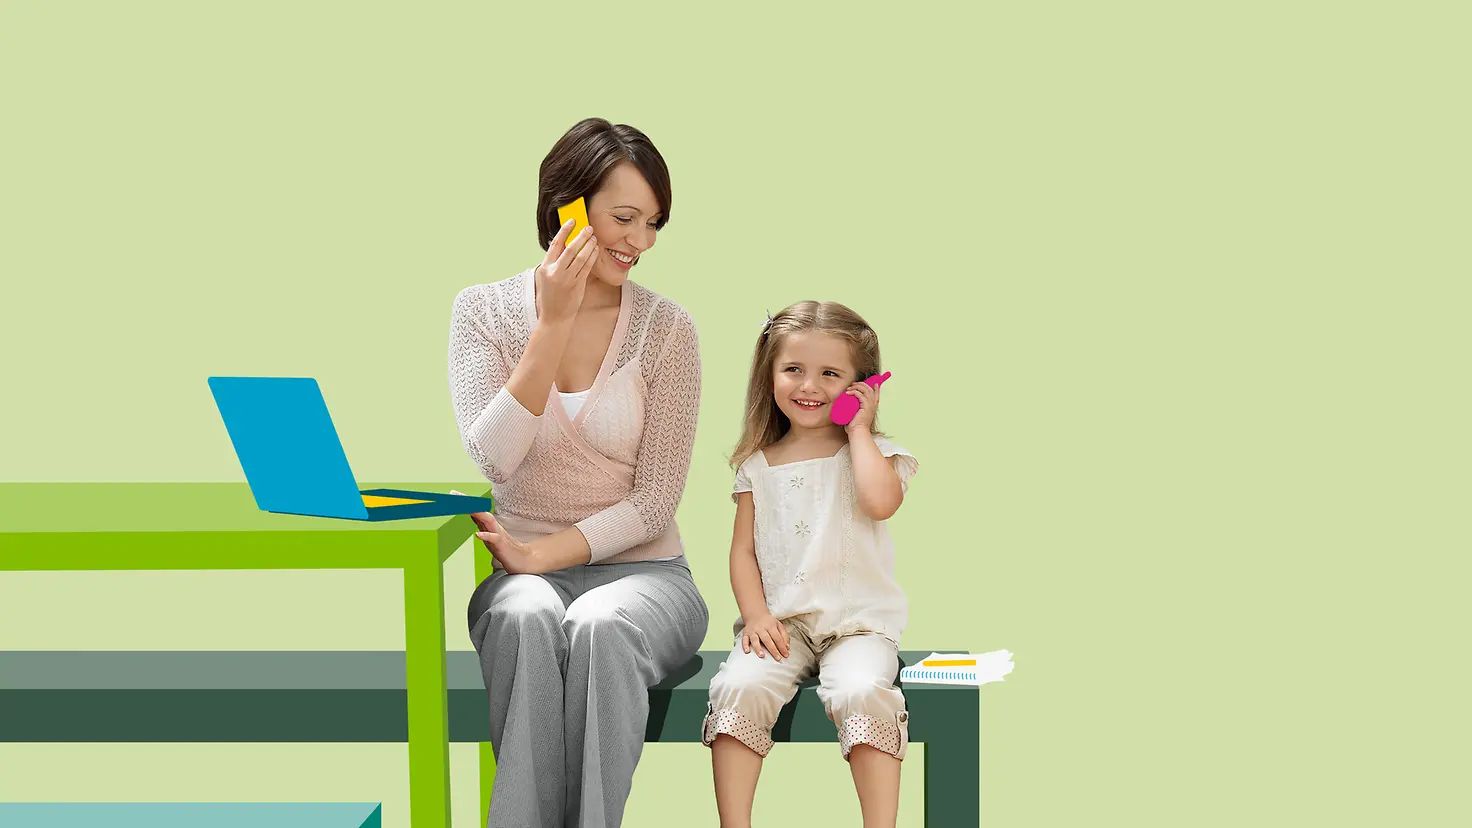 Eine junge Mutter sitzt mit ihrer Tochter vor einem illustrierten Hintergrund auf einer Bank, beide telefonieren.